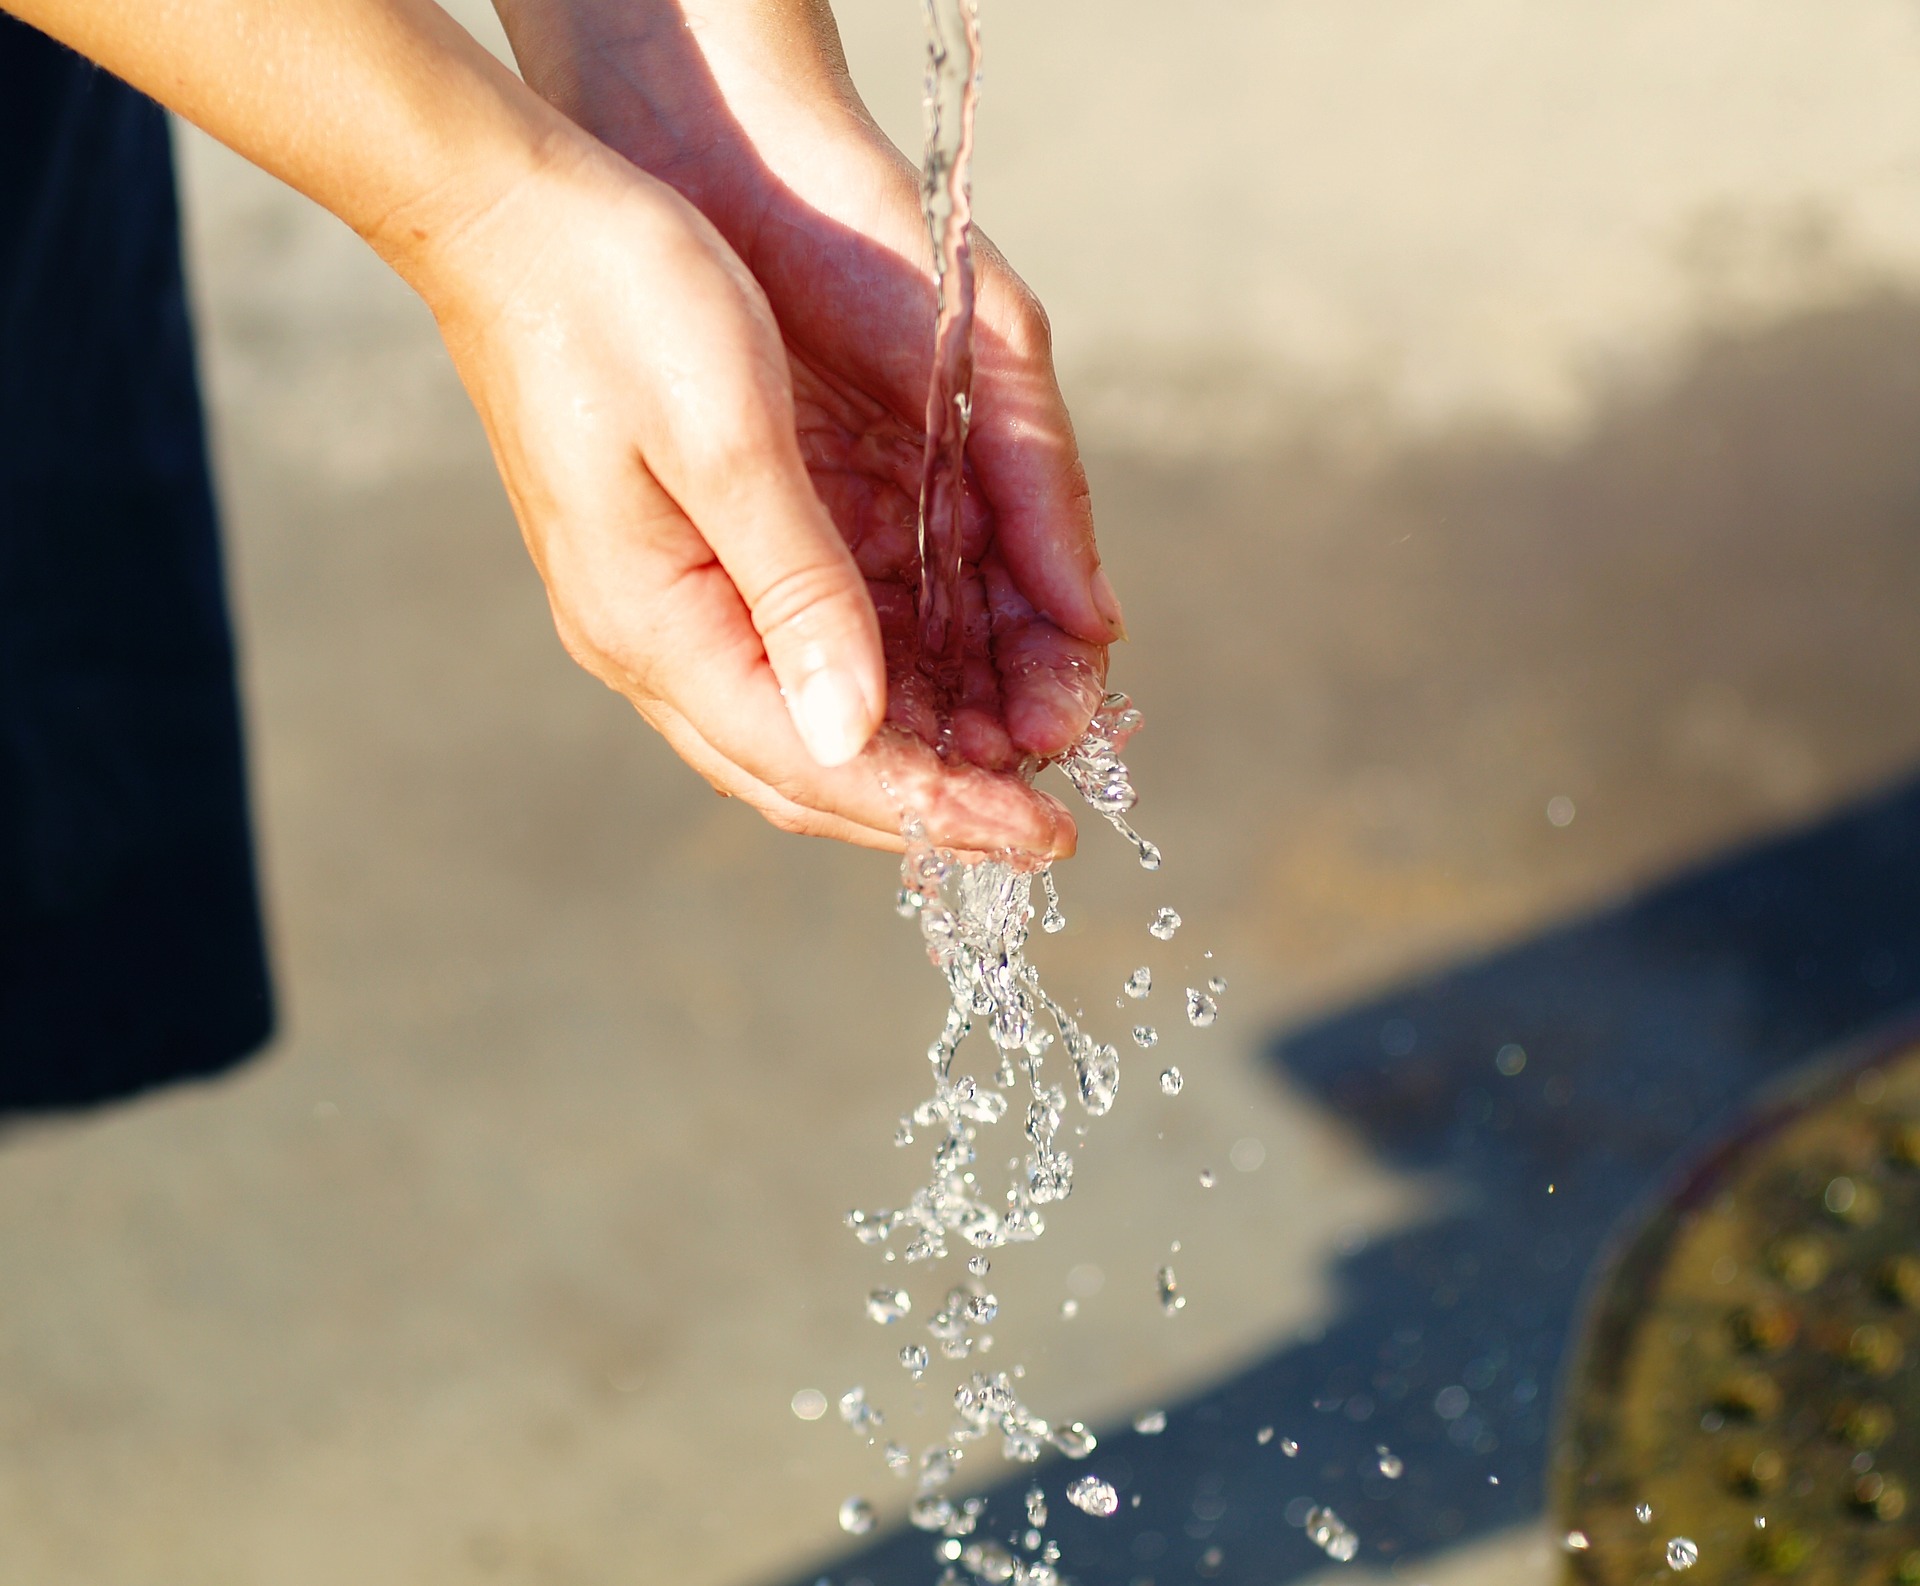 Ressourcenschutz: Wasser ist Leben – Nachhaltigkeit